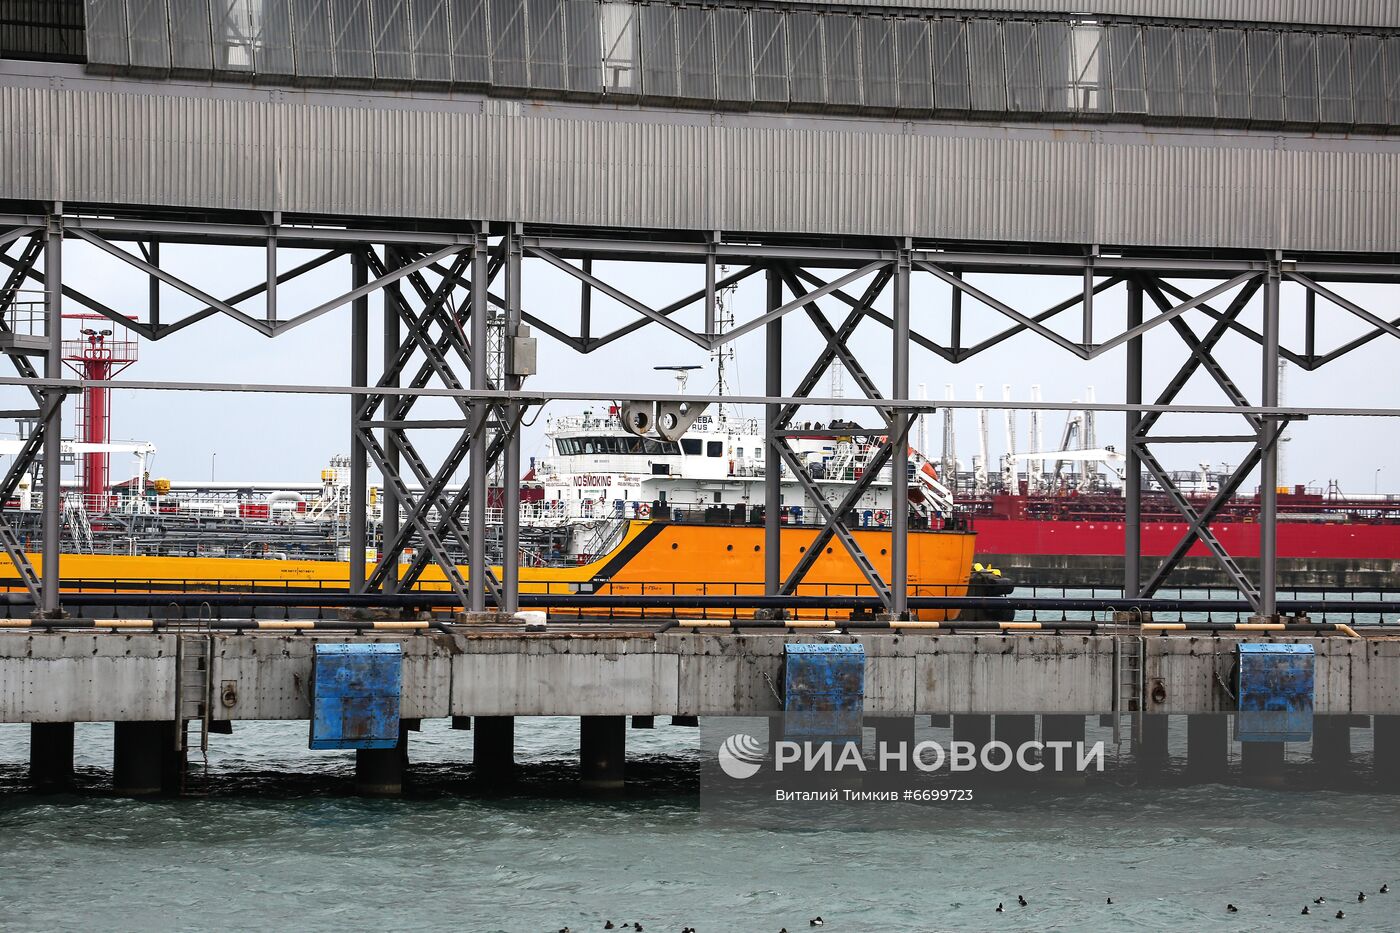 Открытие пункта пропуска через государственную границу РФ в морском порту Туапсе